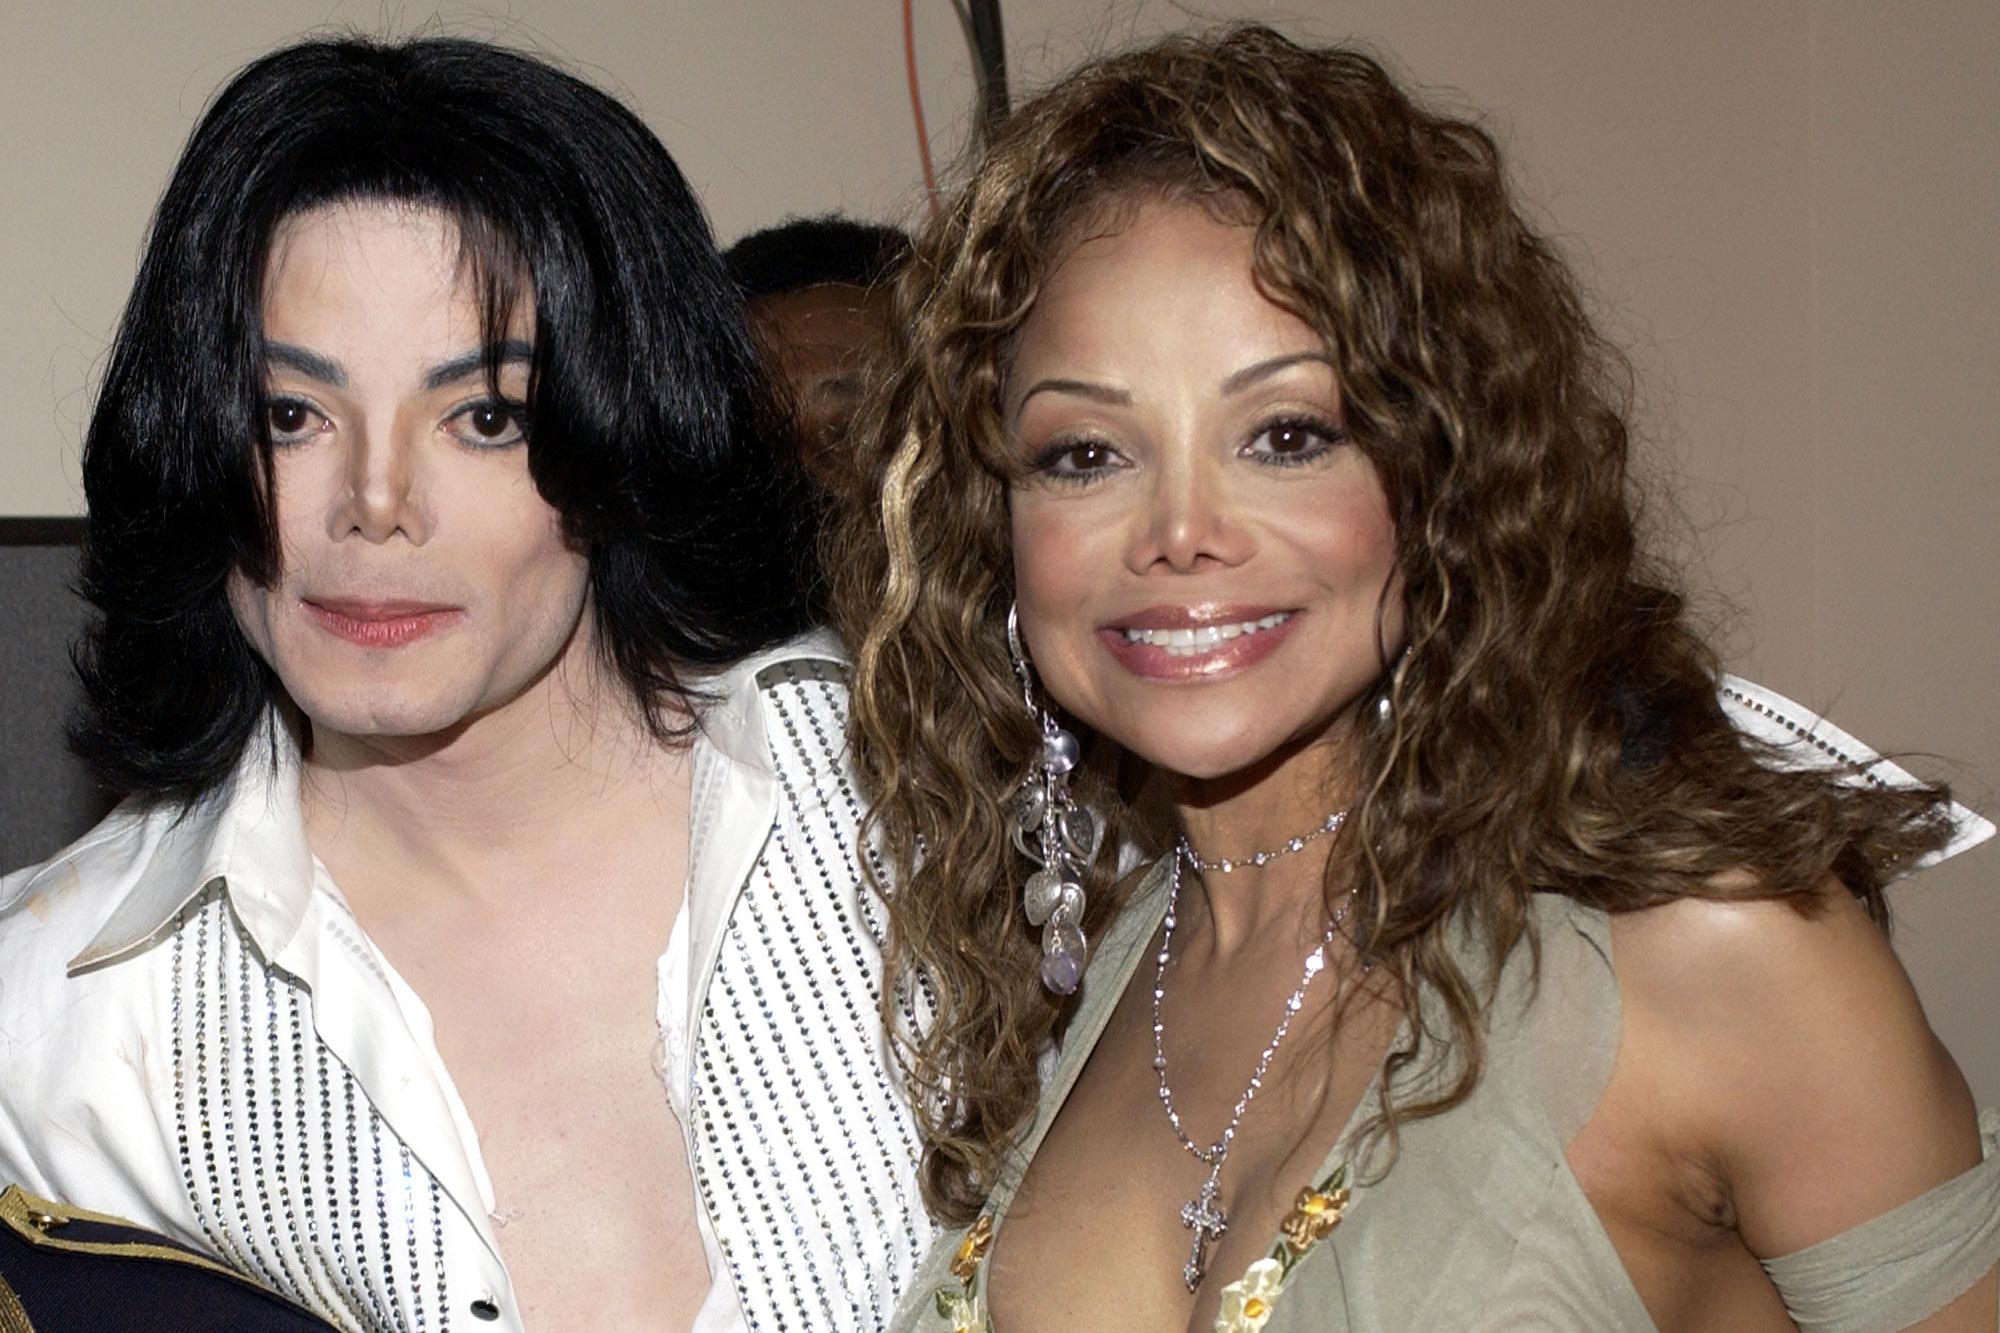 Dezvăluiri tulburătoare. Michael Jackson a fost jefuit de logodnicul surorii sale imediat după ce a murit. I-a furat inclusiv pijamalele